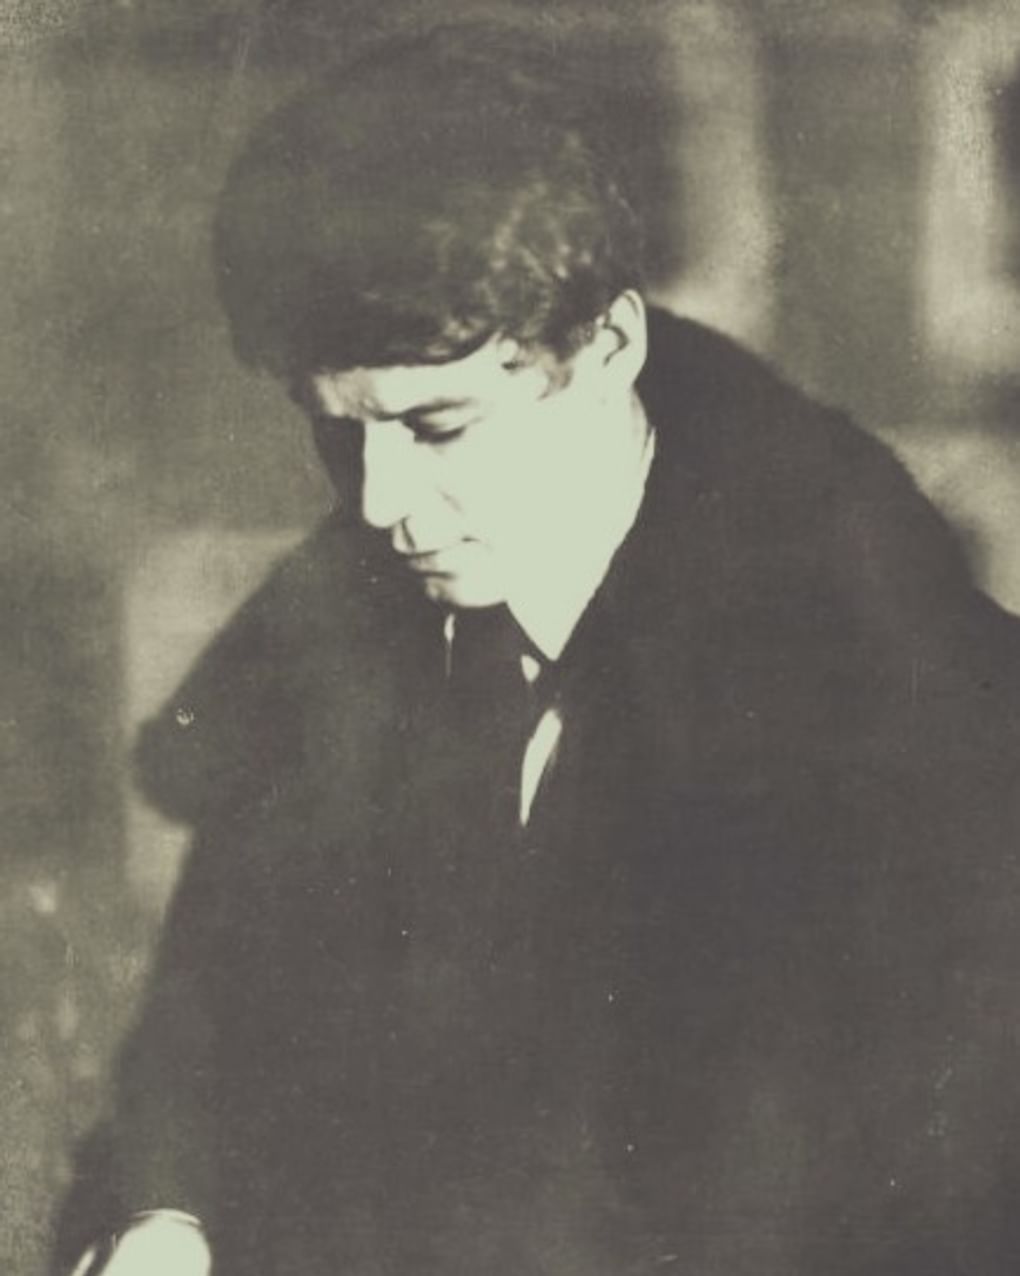 Поэт Сергей Есенин. 1924. Фотография: Моисей Наппельбаум / Мультимедиа арт музей, Москва